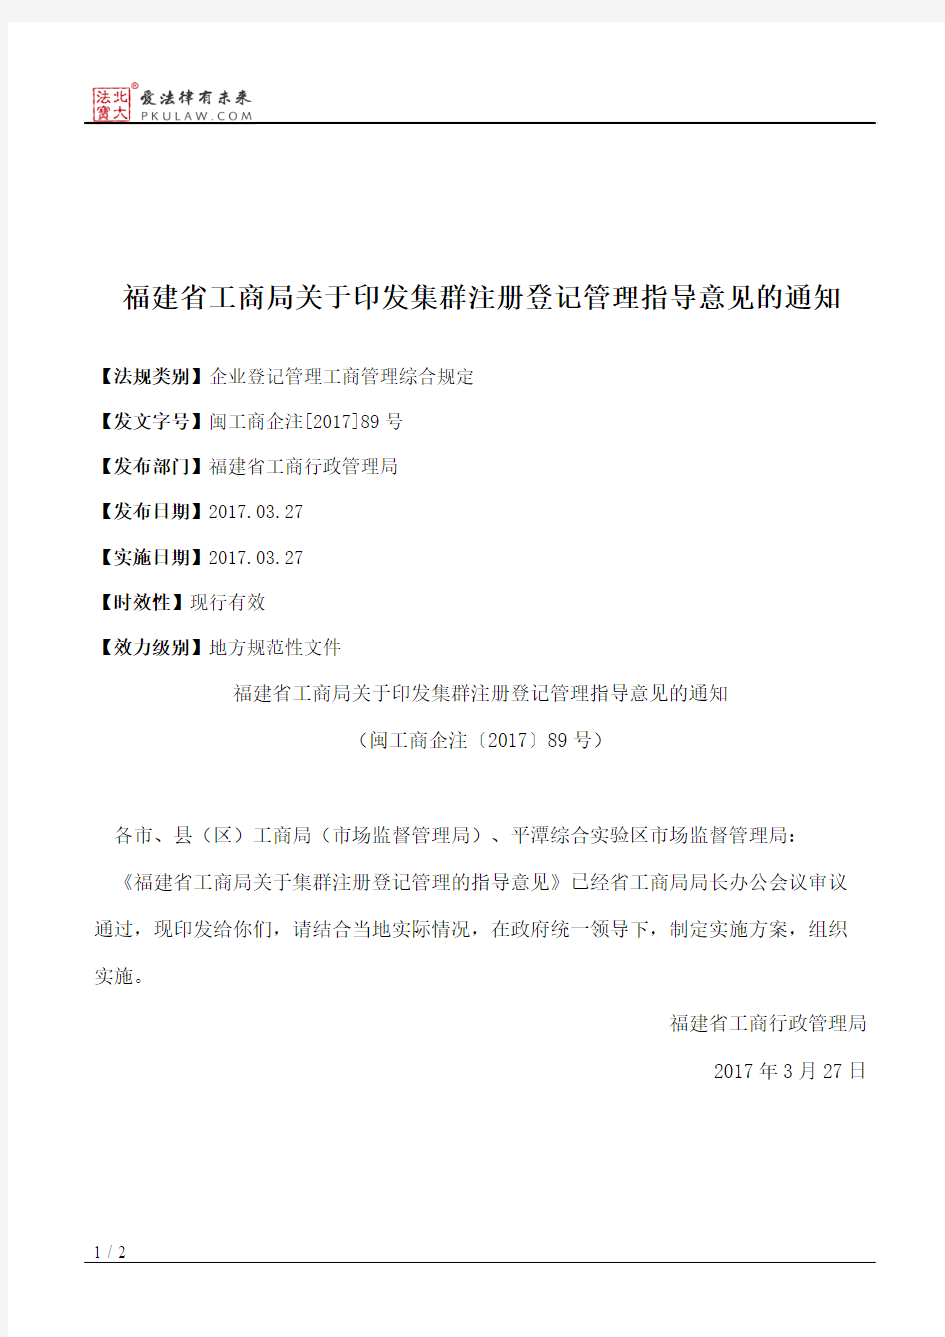 福建省工商局关于印发集群注册登记管理指导意见的通知